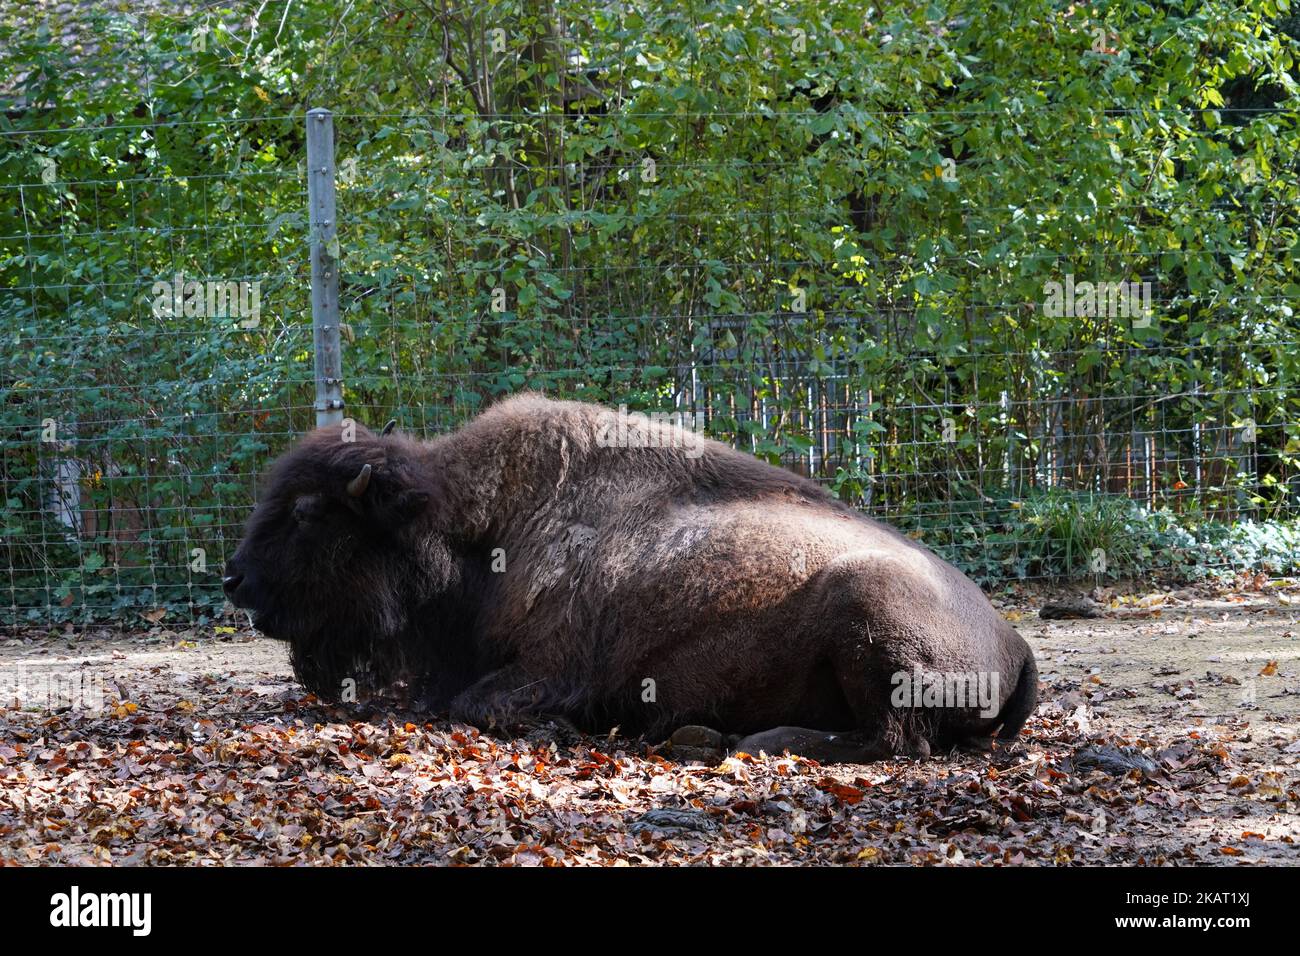 Vue sur les jeunes bisons américains, dans le bison latin, pontant sur le sol recouvert de feuillage des arbres entourant le pavillon du zoo suisse. Banque D'Images